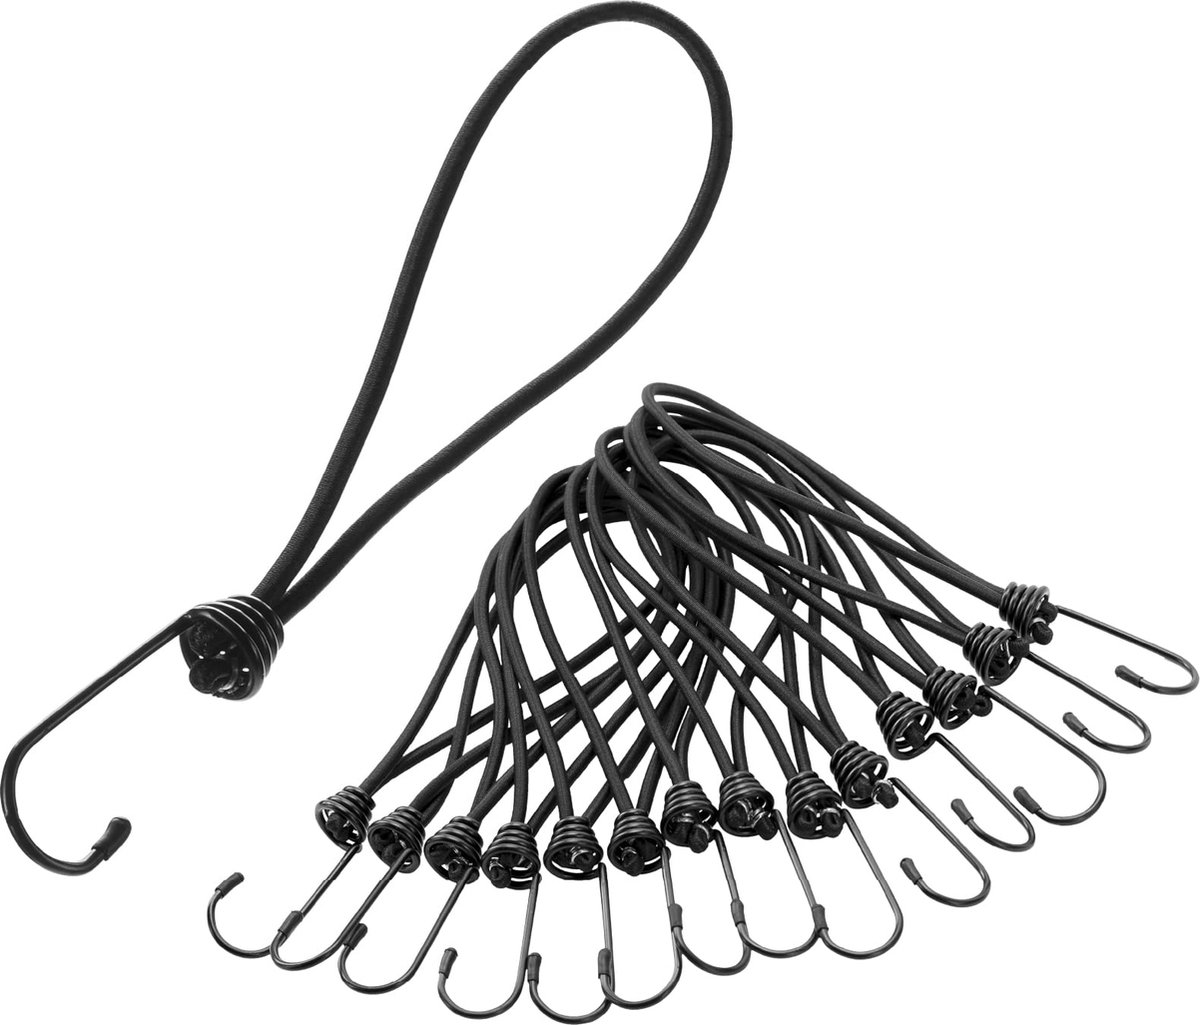 PRETEX Lot de 12 tendeurs avec crochets – Lot de cordes longues en noir –  Sangles d'arrimage élastiques solides avec crochets robustes – Lot de